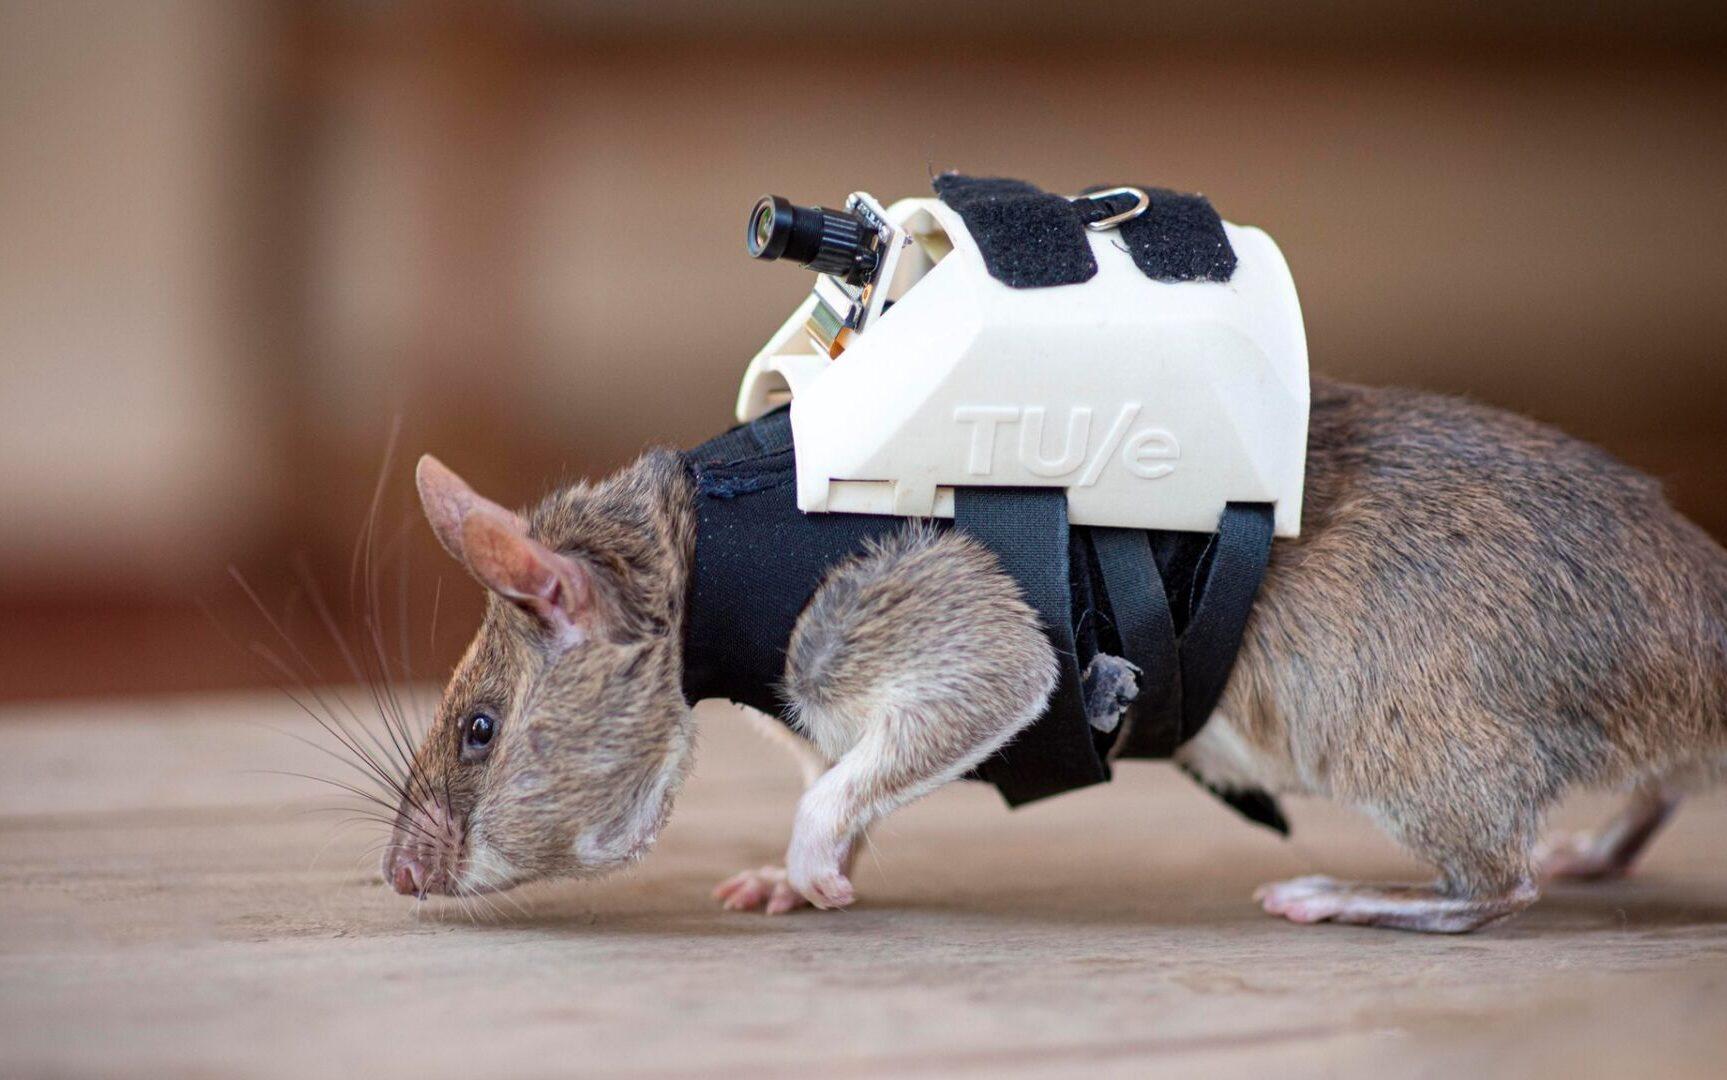 Tresowane szczury z kamerą na plecach będą ratować ludzi z gruzów /fot. facebook.com/herorat